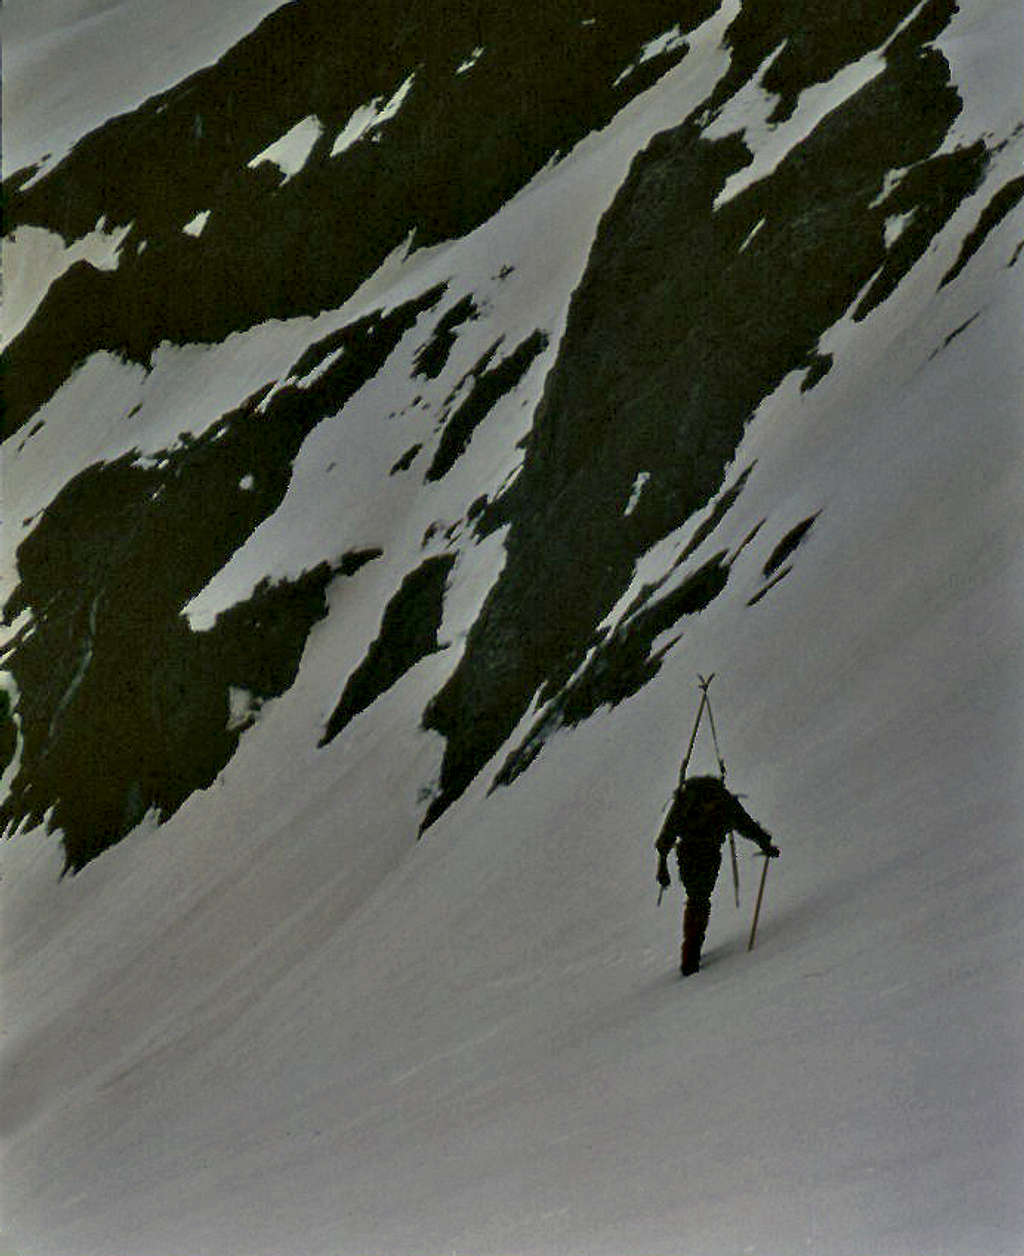 Glacier de Surette ascent